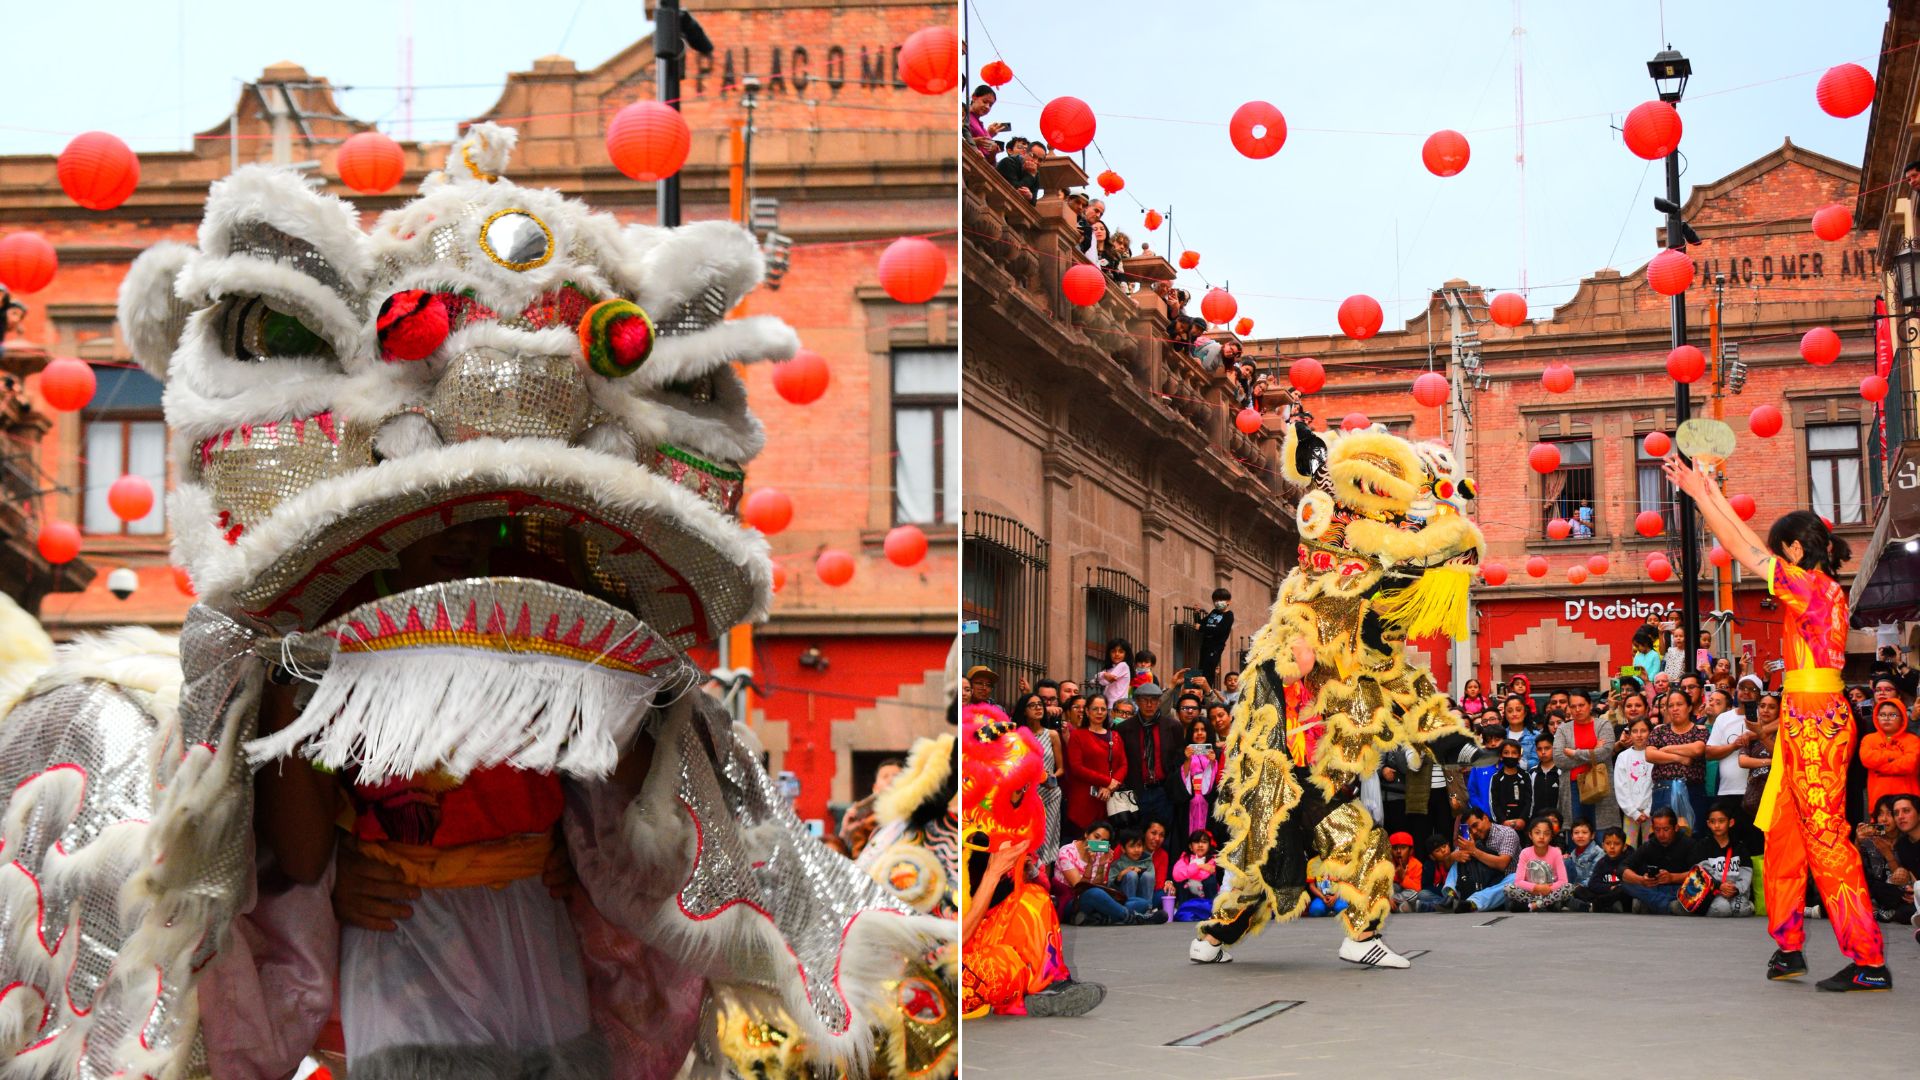 Con impresionante asistencia se celebró el año nuevo chino: Dragón de madera en el MAC